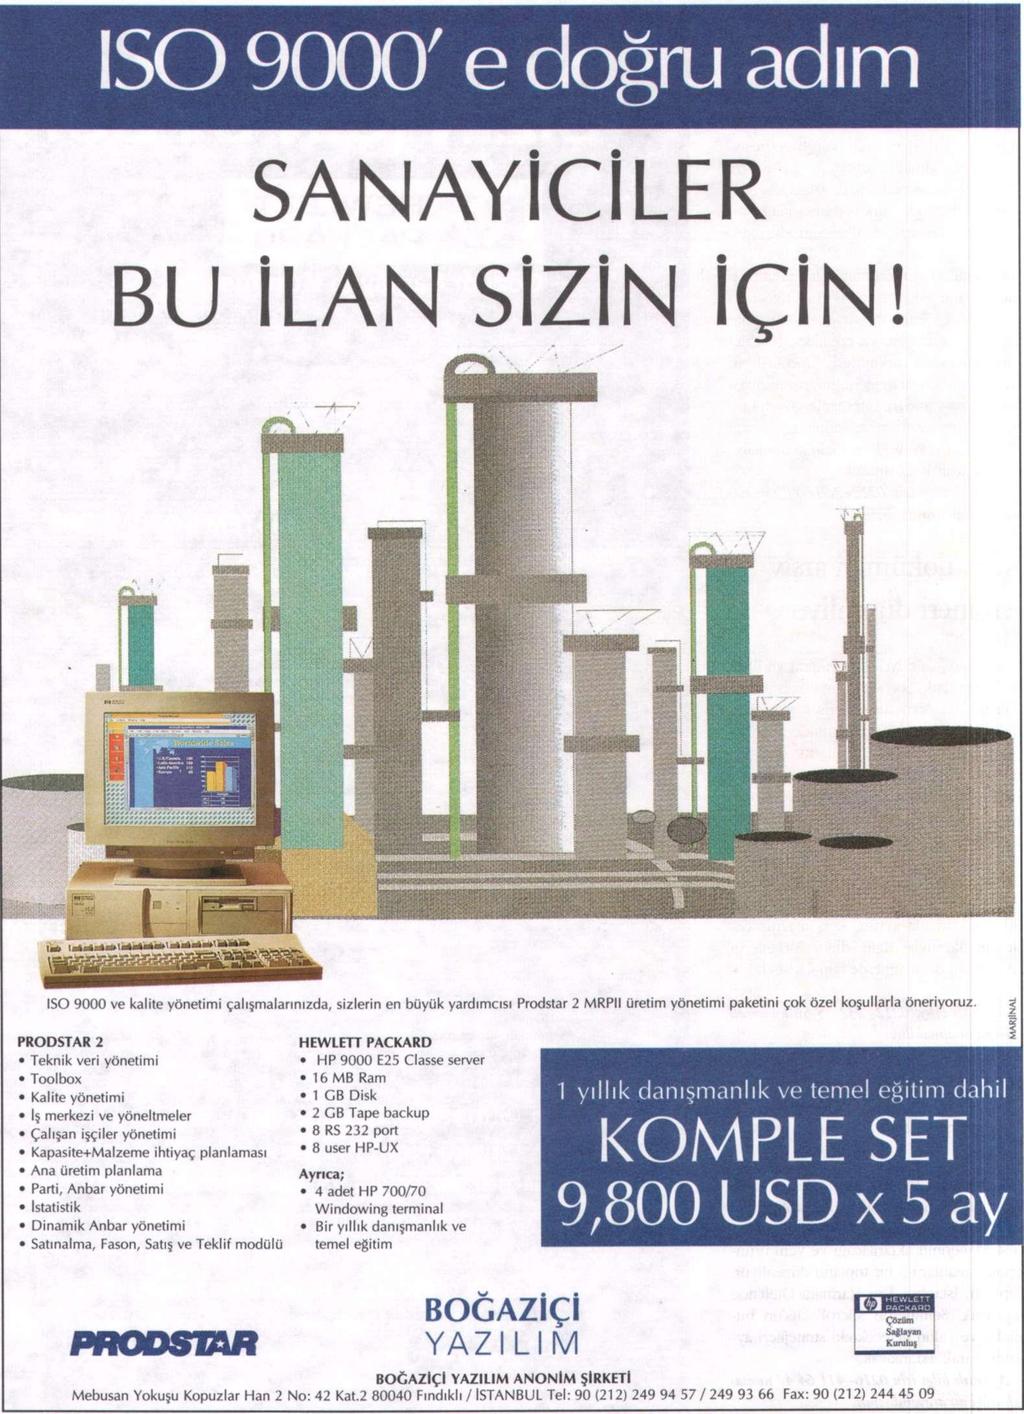 6-12 Kasım 1995- Sayı: 41 sektör 23 Biltektaş, Bisan ve Egemosan'ın projesini üstlendi Biltektaş, Kaleporselen ile Bisan ve Egemosan şirketlerinin bilgisayar destekli üretim planlama ve kontrol